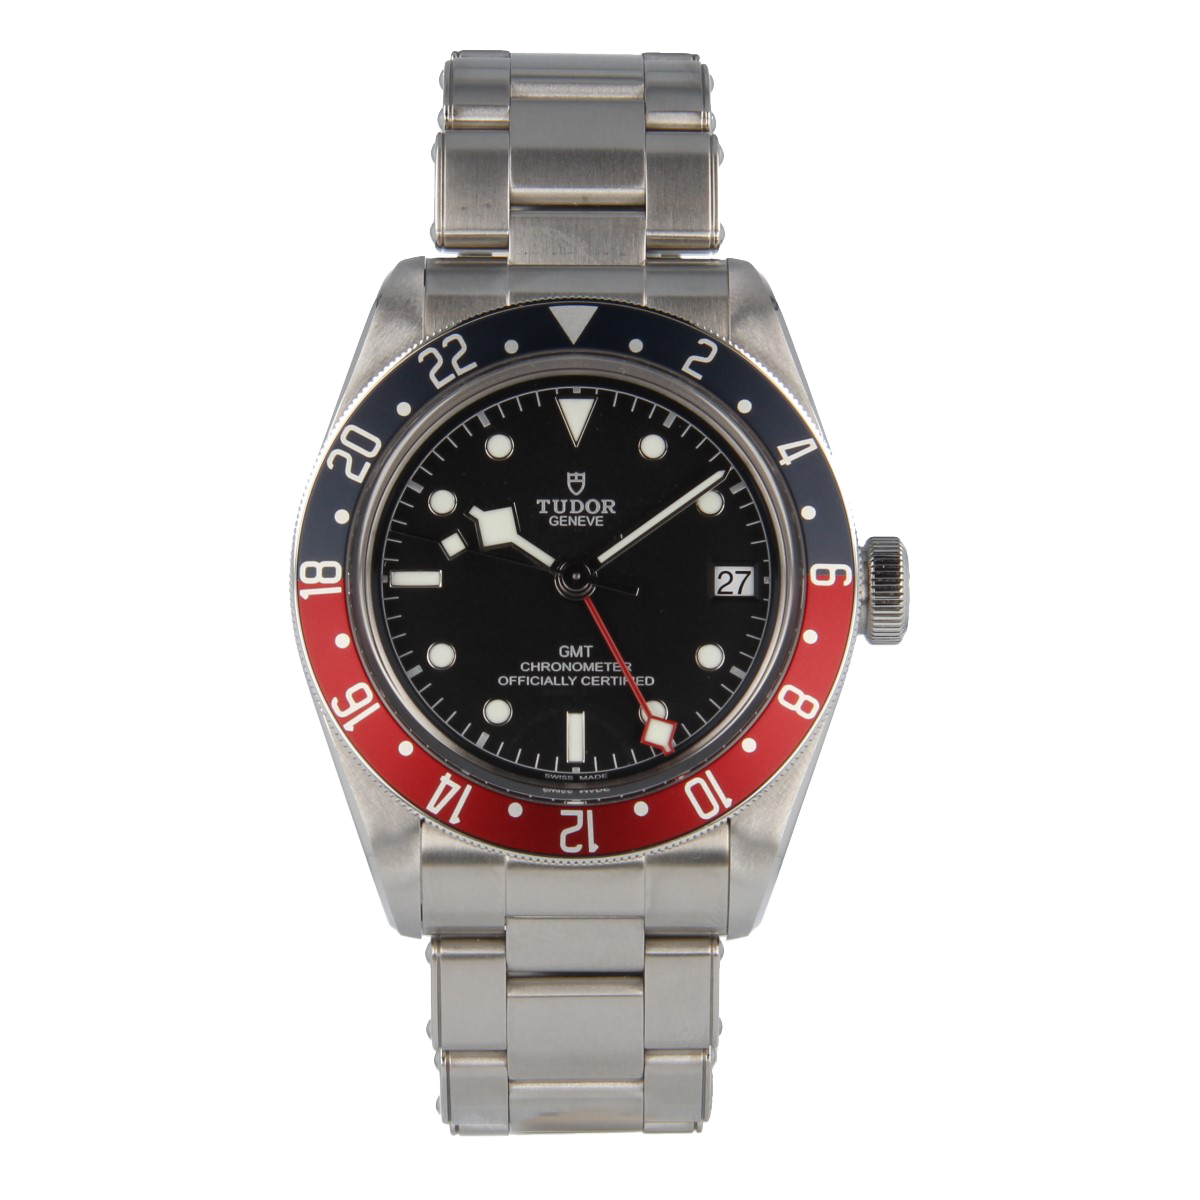 Tudor Black Bay GMT 79830RB - Completo con caja y documentación original | Comprar reloj Tudor segunda mano